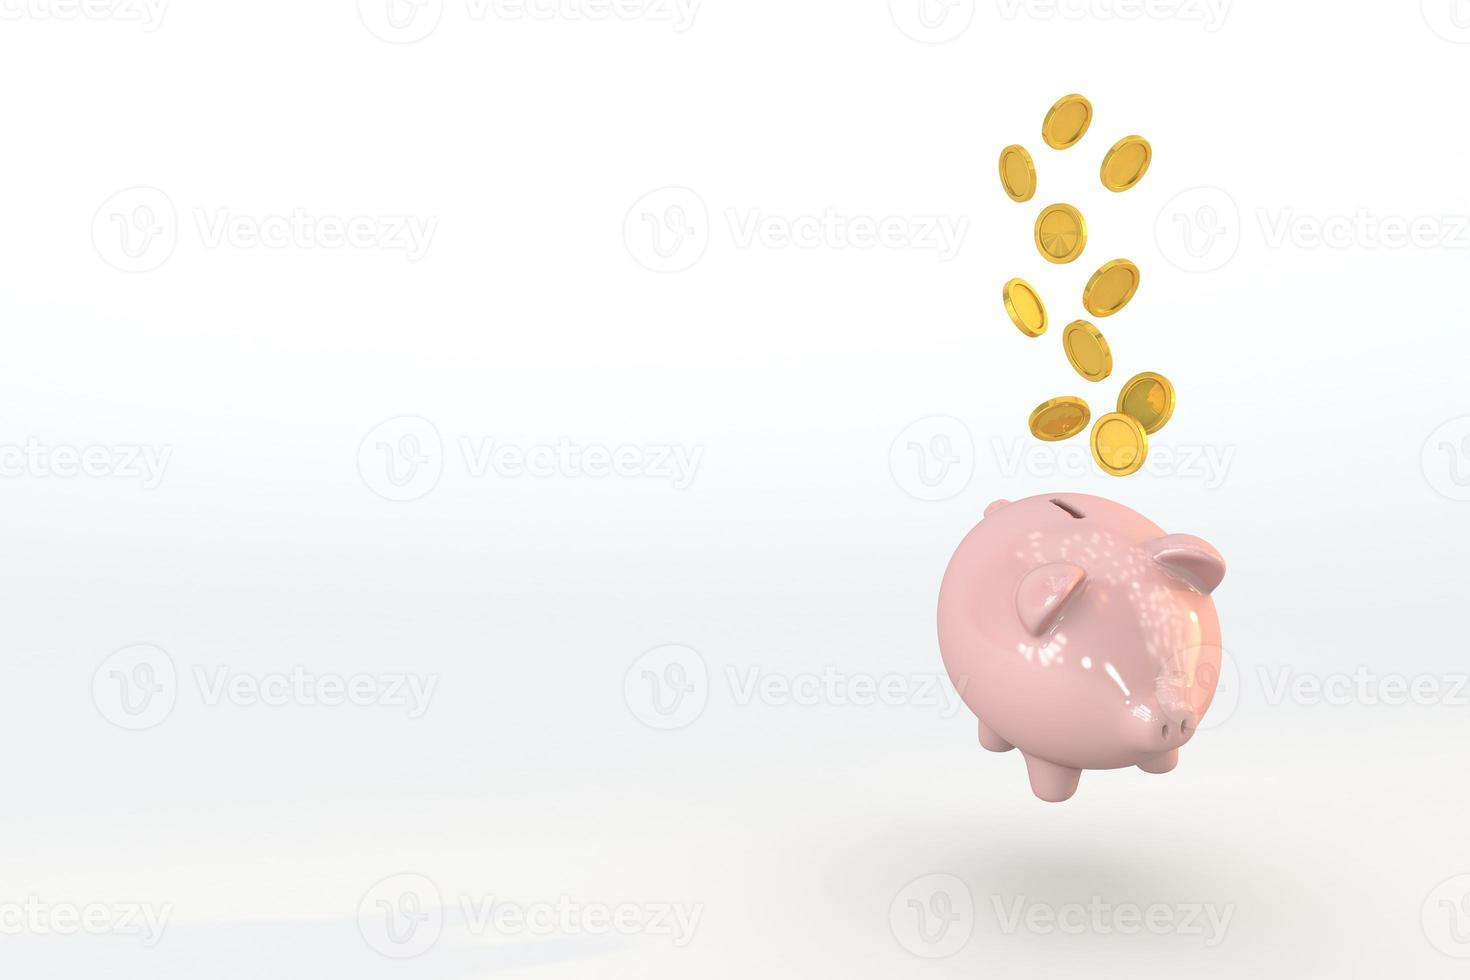 Hucha 3d y moneda de oro flotando un concepto financiero económico para ahorrar dinero foto